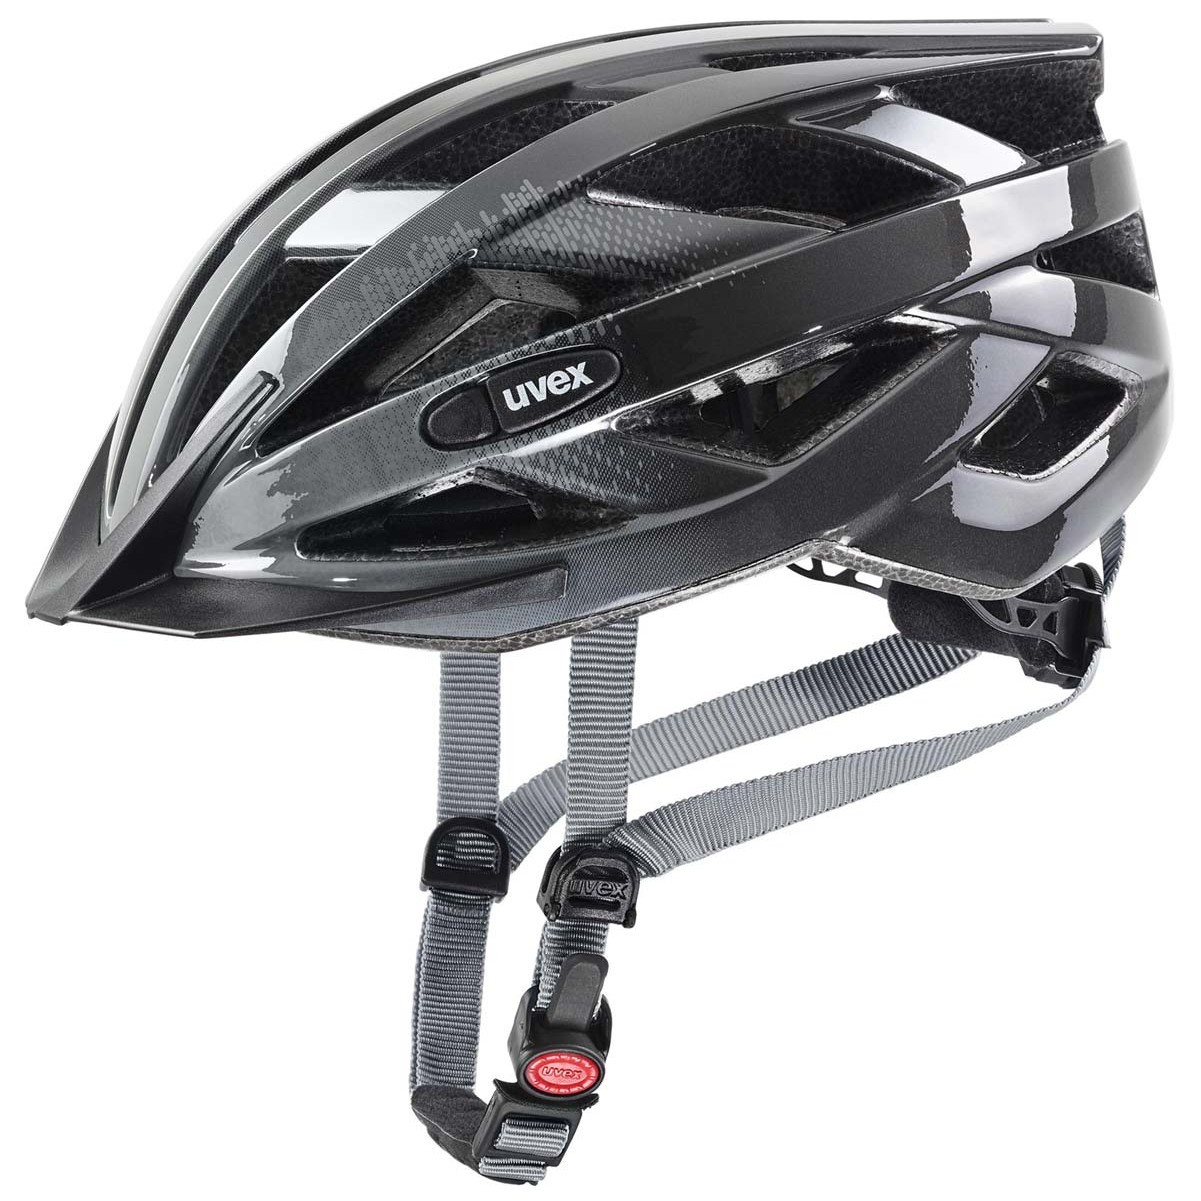 Cyklistická helma Uvex Air wing Velikost helmy: 52-57 cm / Barva: šedá/černá